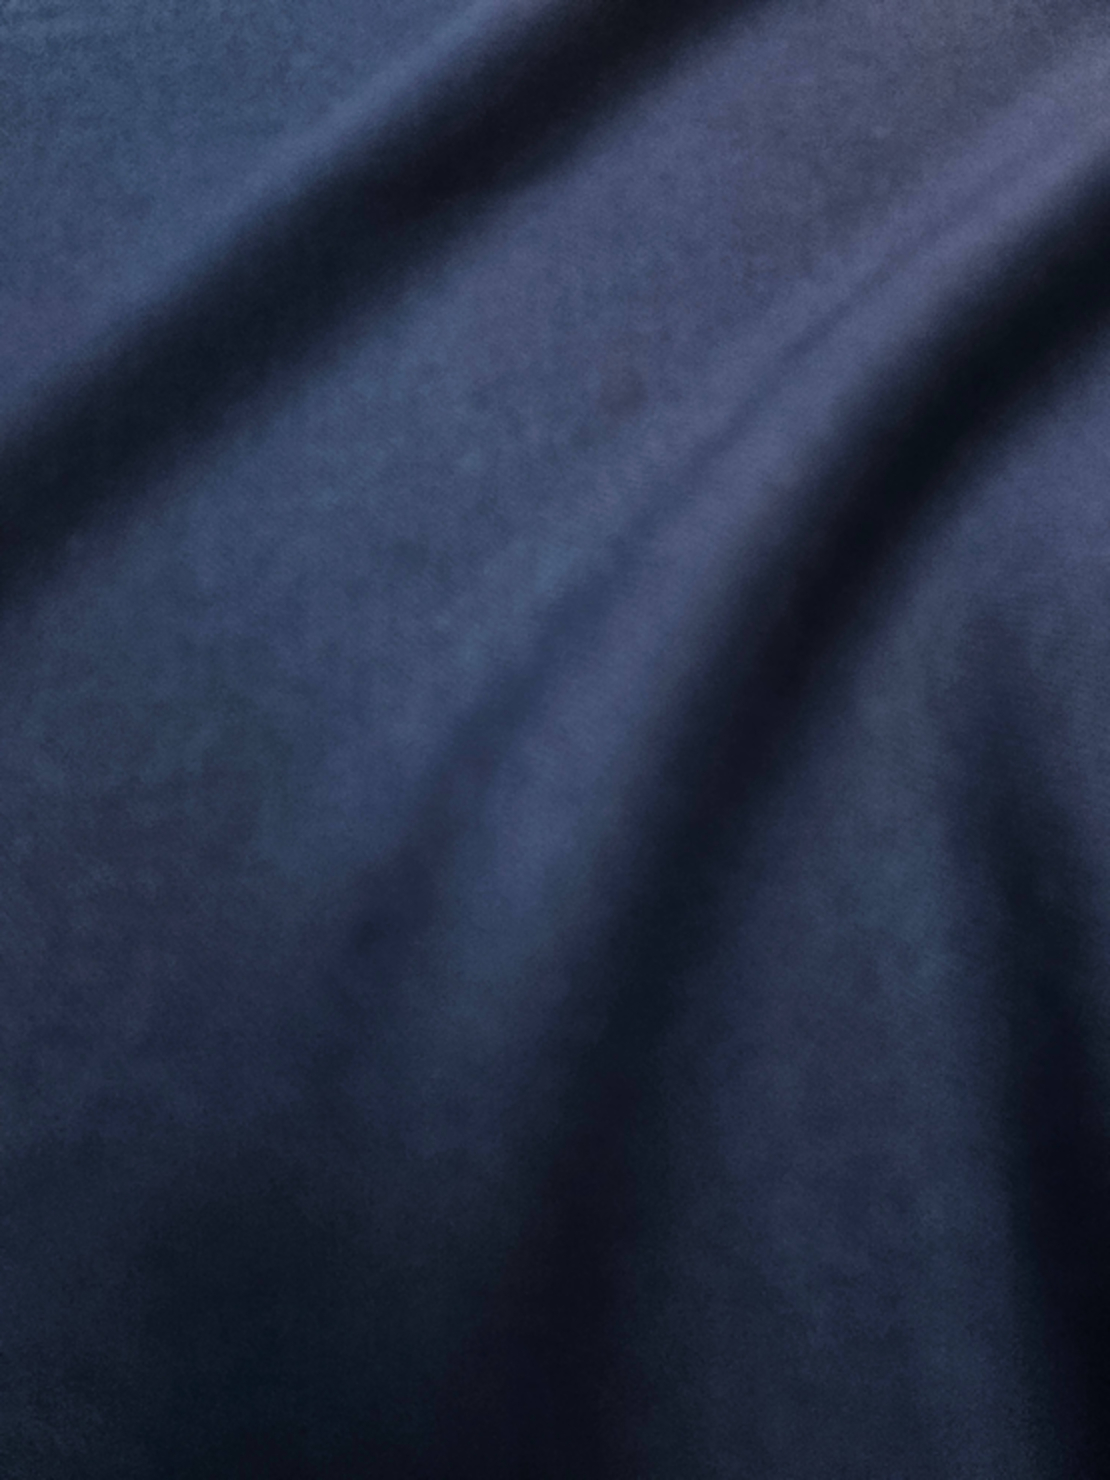 אריג דיאגונל מחטב צבע כחול כהה